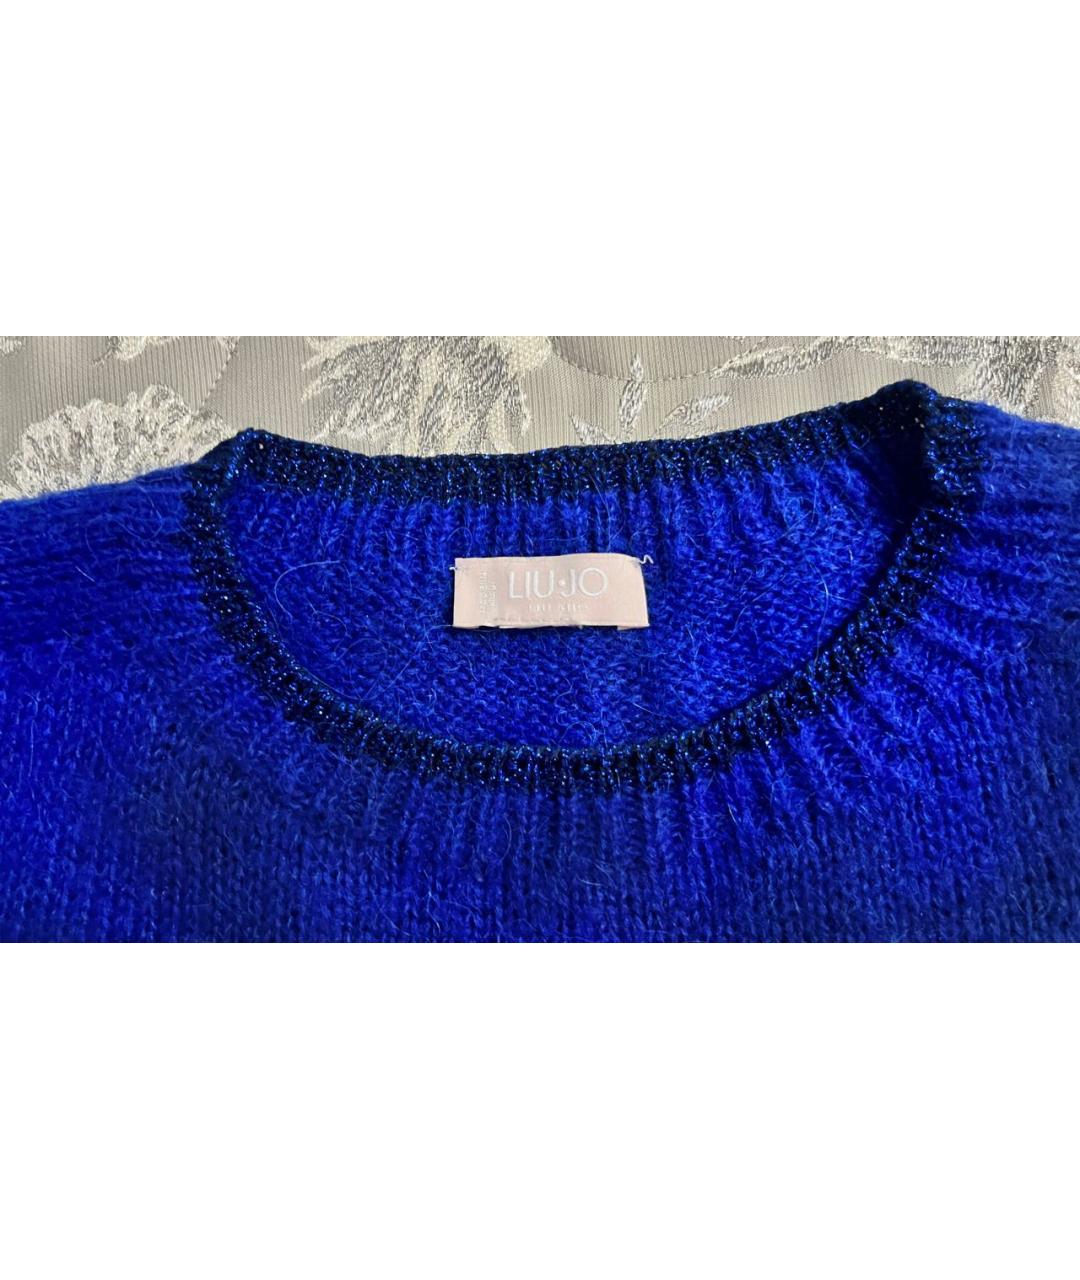 LIU JO Синий шерстяной джемпер / свитер, фото 3